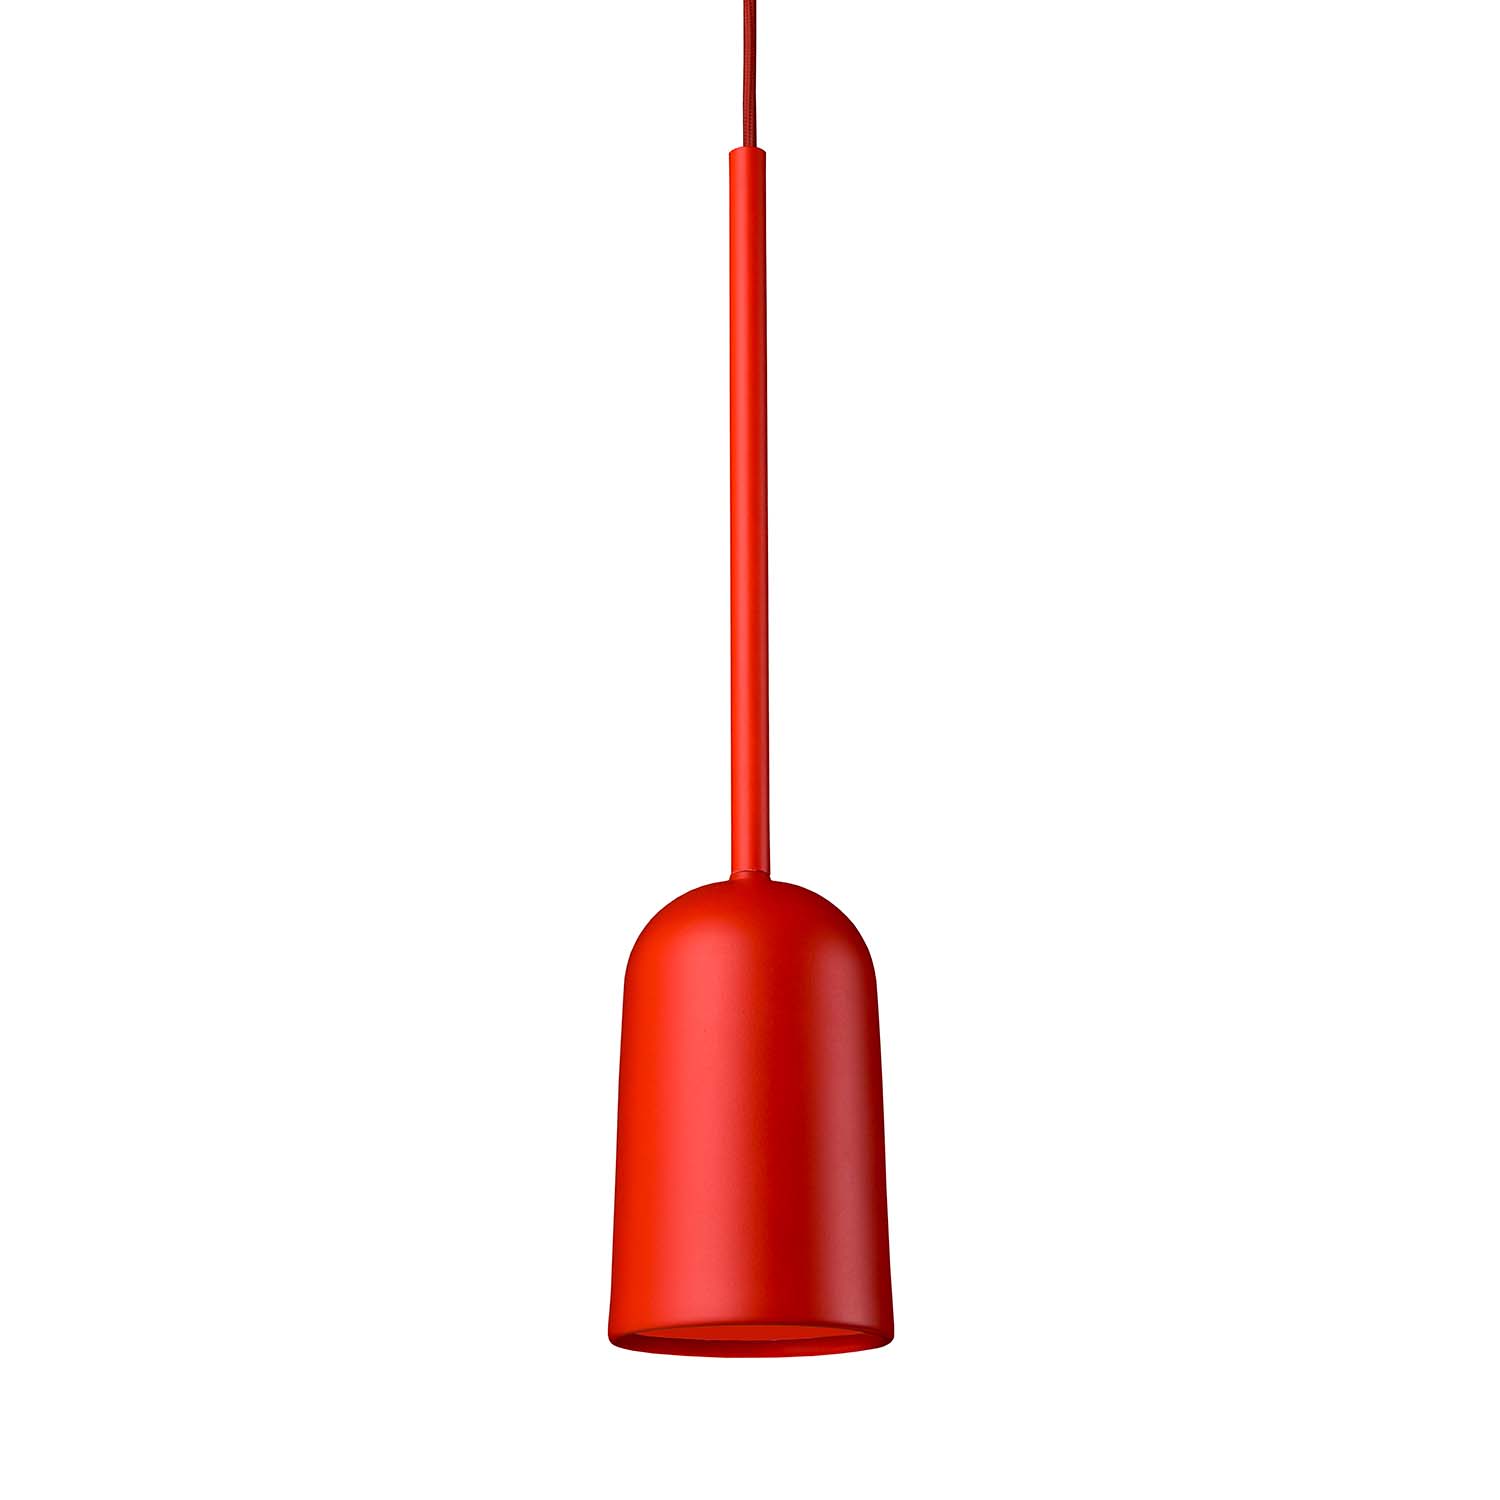 FIGURA ARC - Suspension colorée minimaliste design